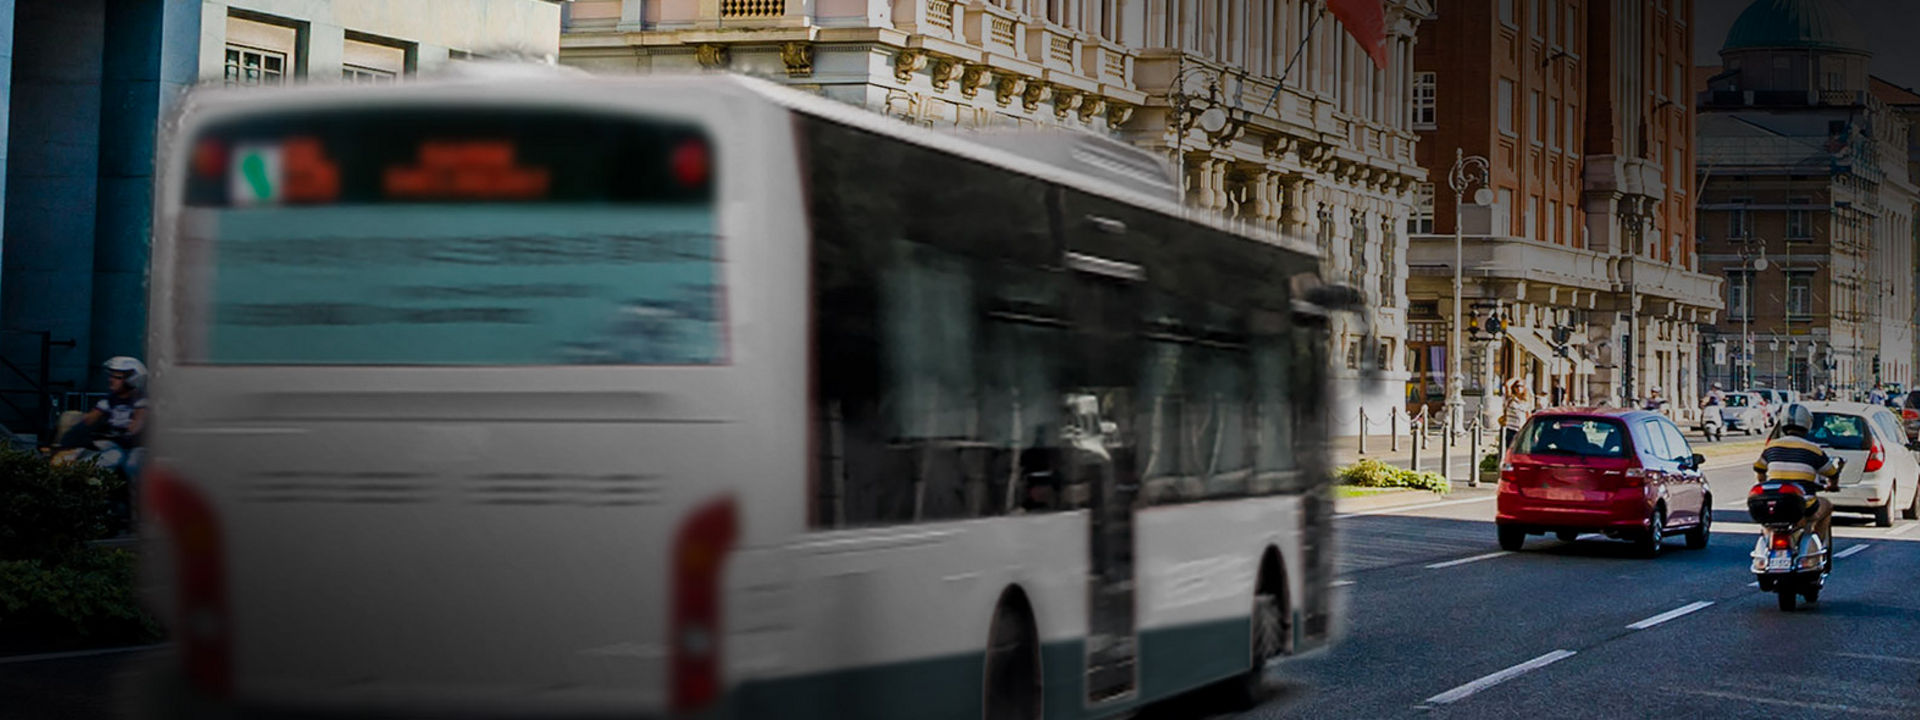 Esta imagen muestra la parte trasera de un autobús urbano con neumáticos Bridgestone de autobús urbano conduciendo en el centro de la ciudad.